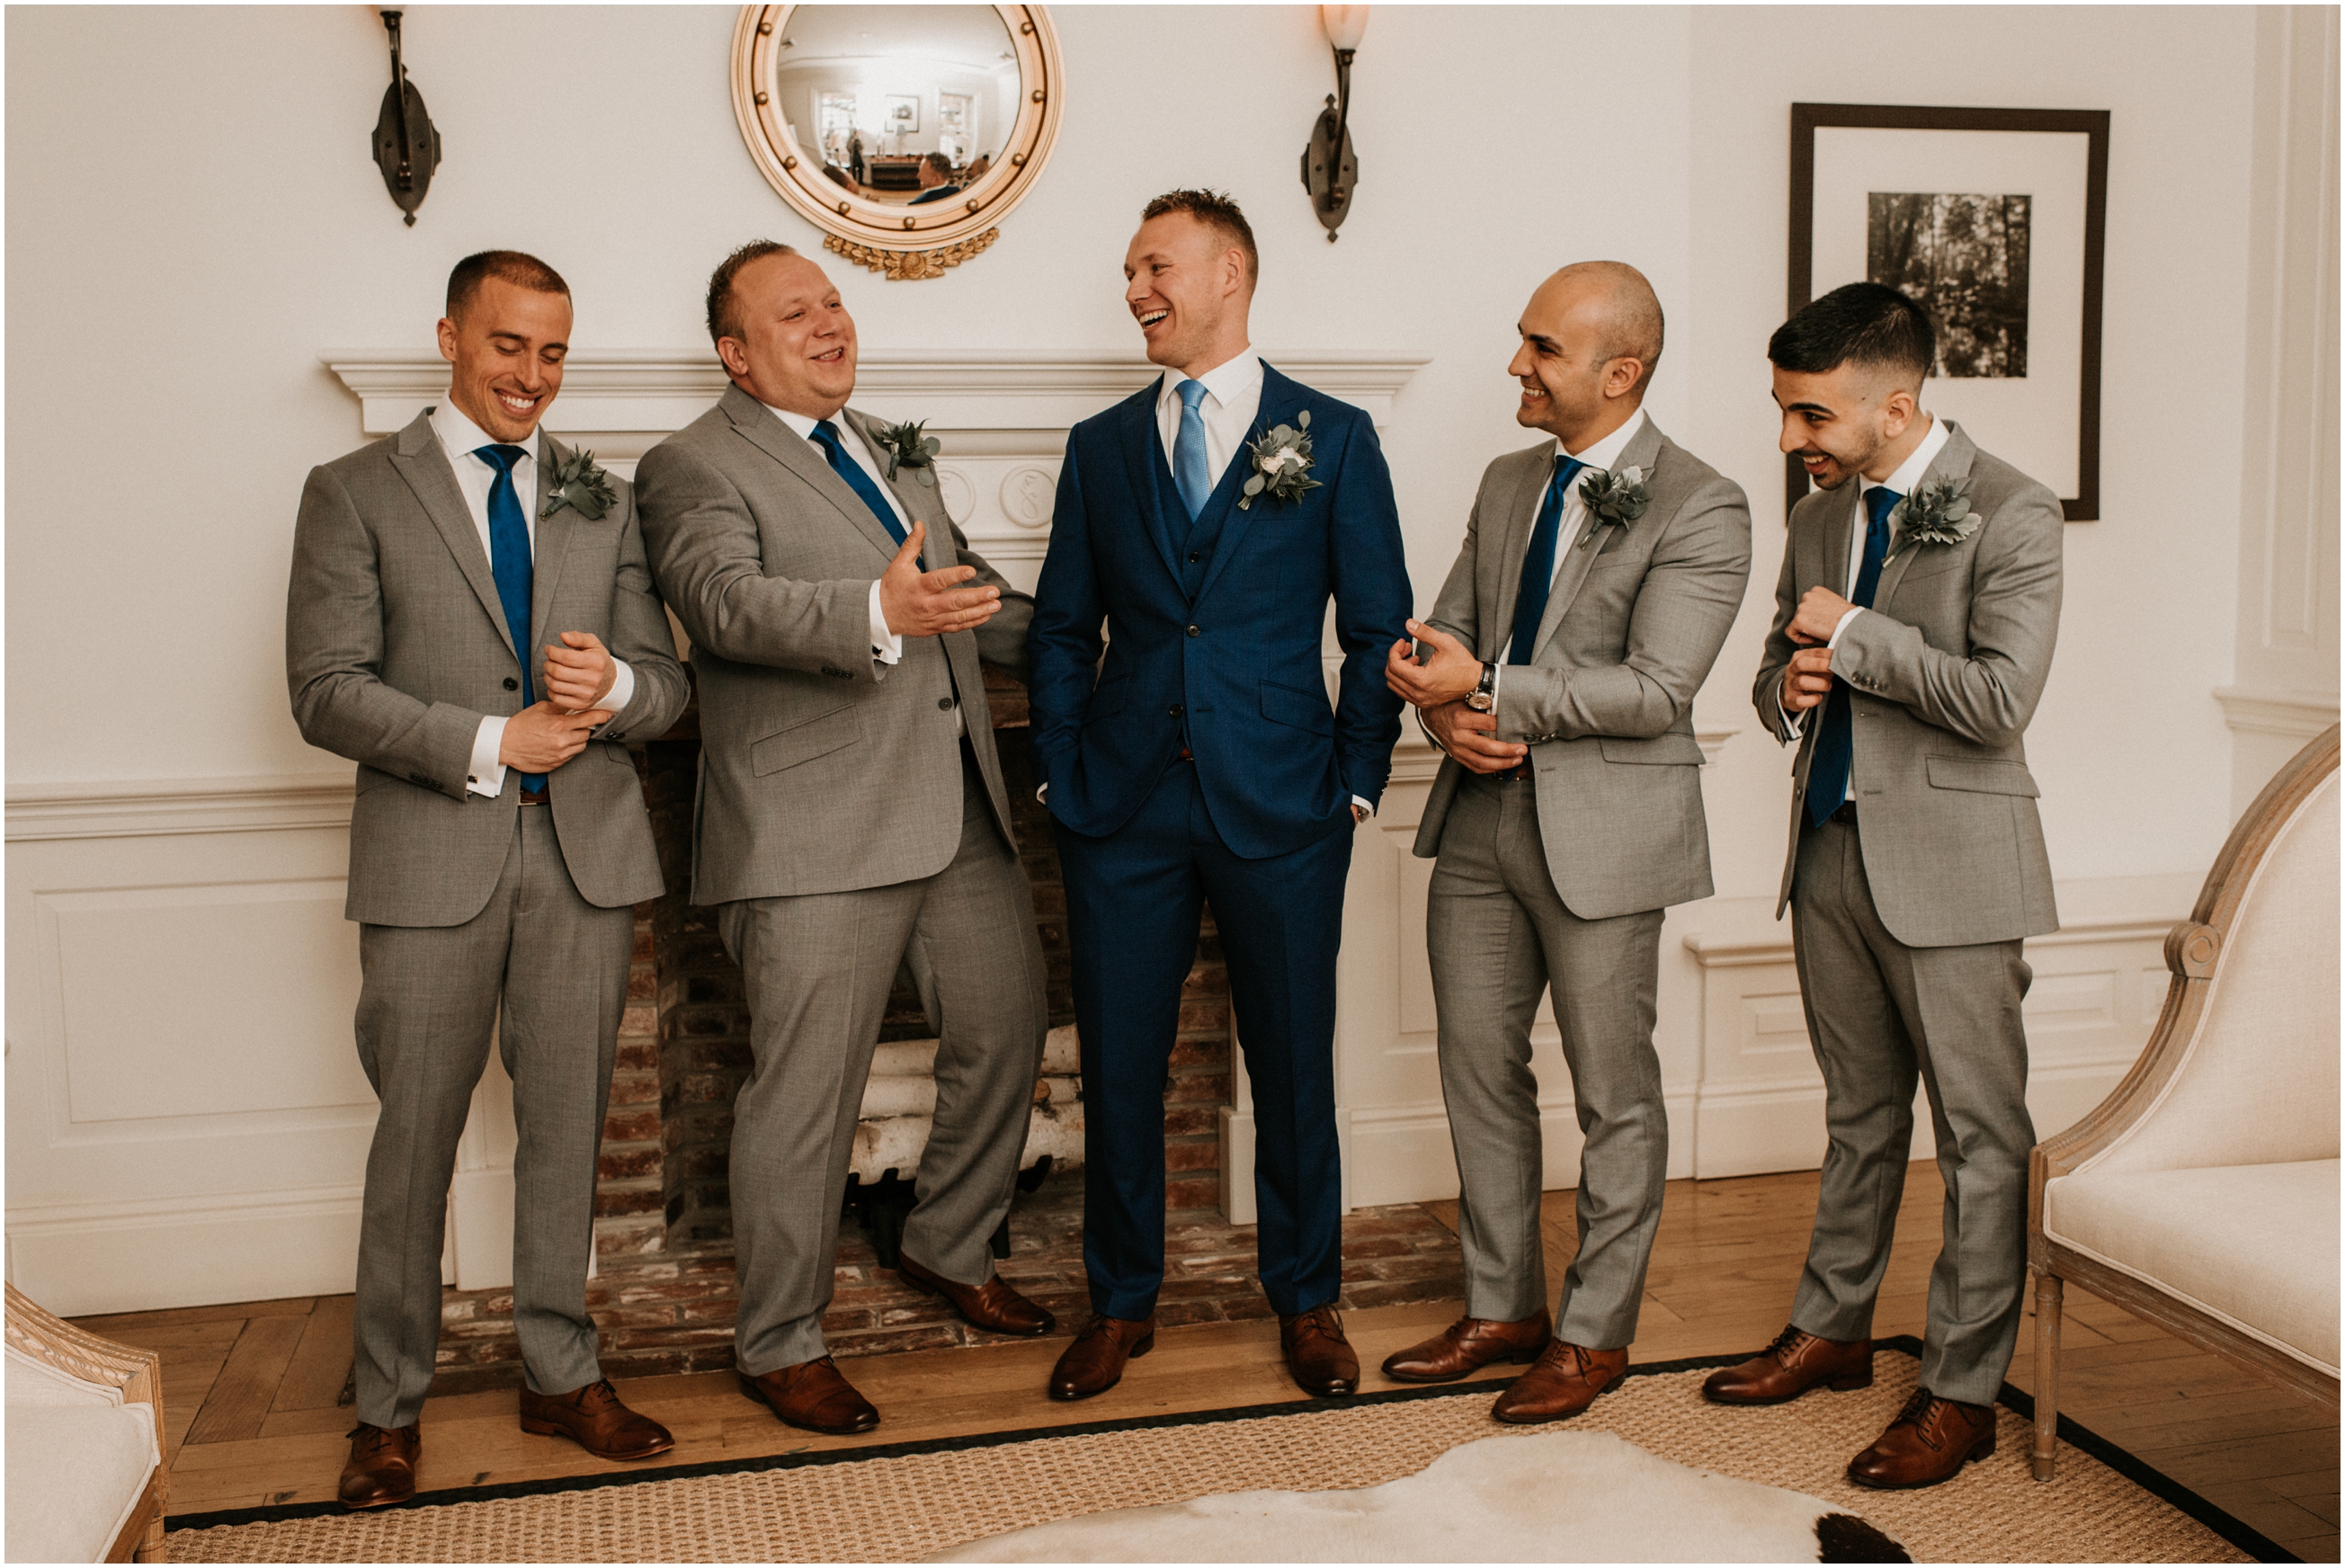 groom and groomsmen laughing